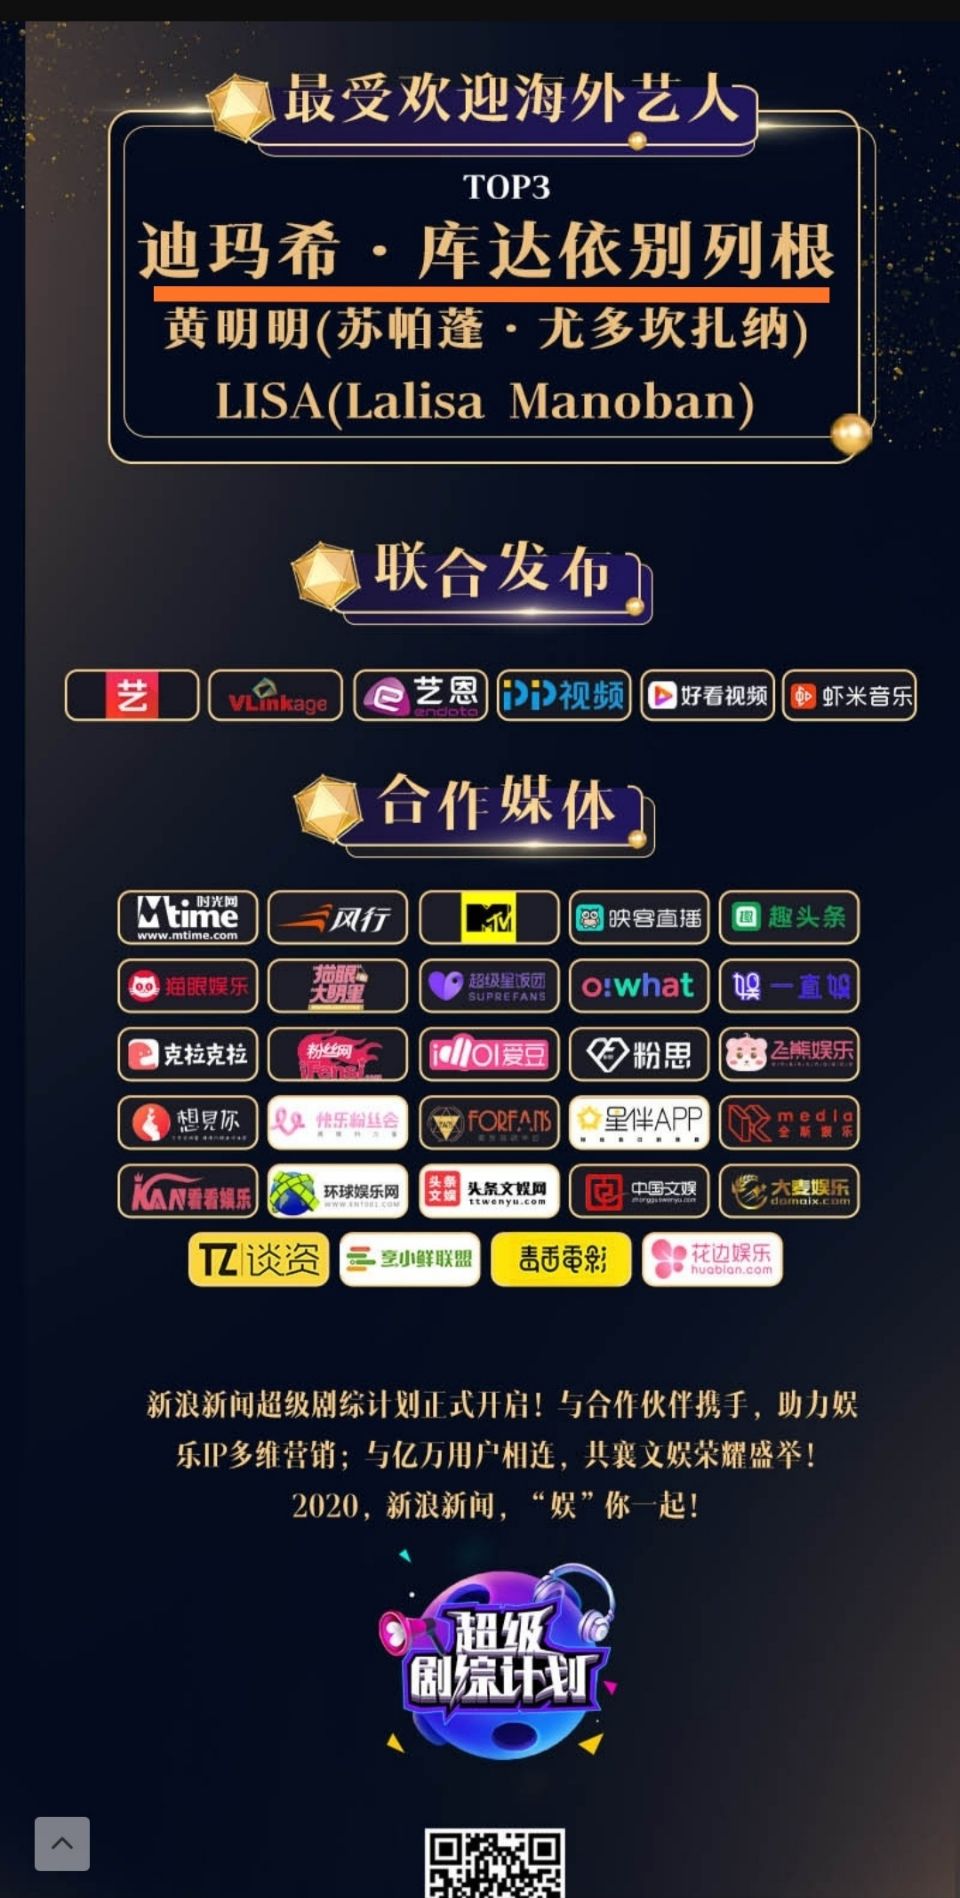 Димаш признан лучшим зарубежным артистом в рейтинге «Leading 2020 Sina Entertainment festival»